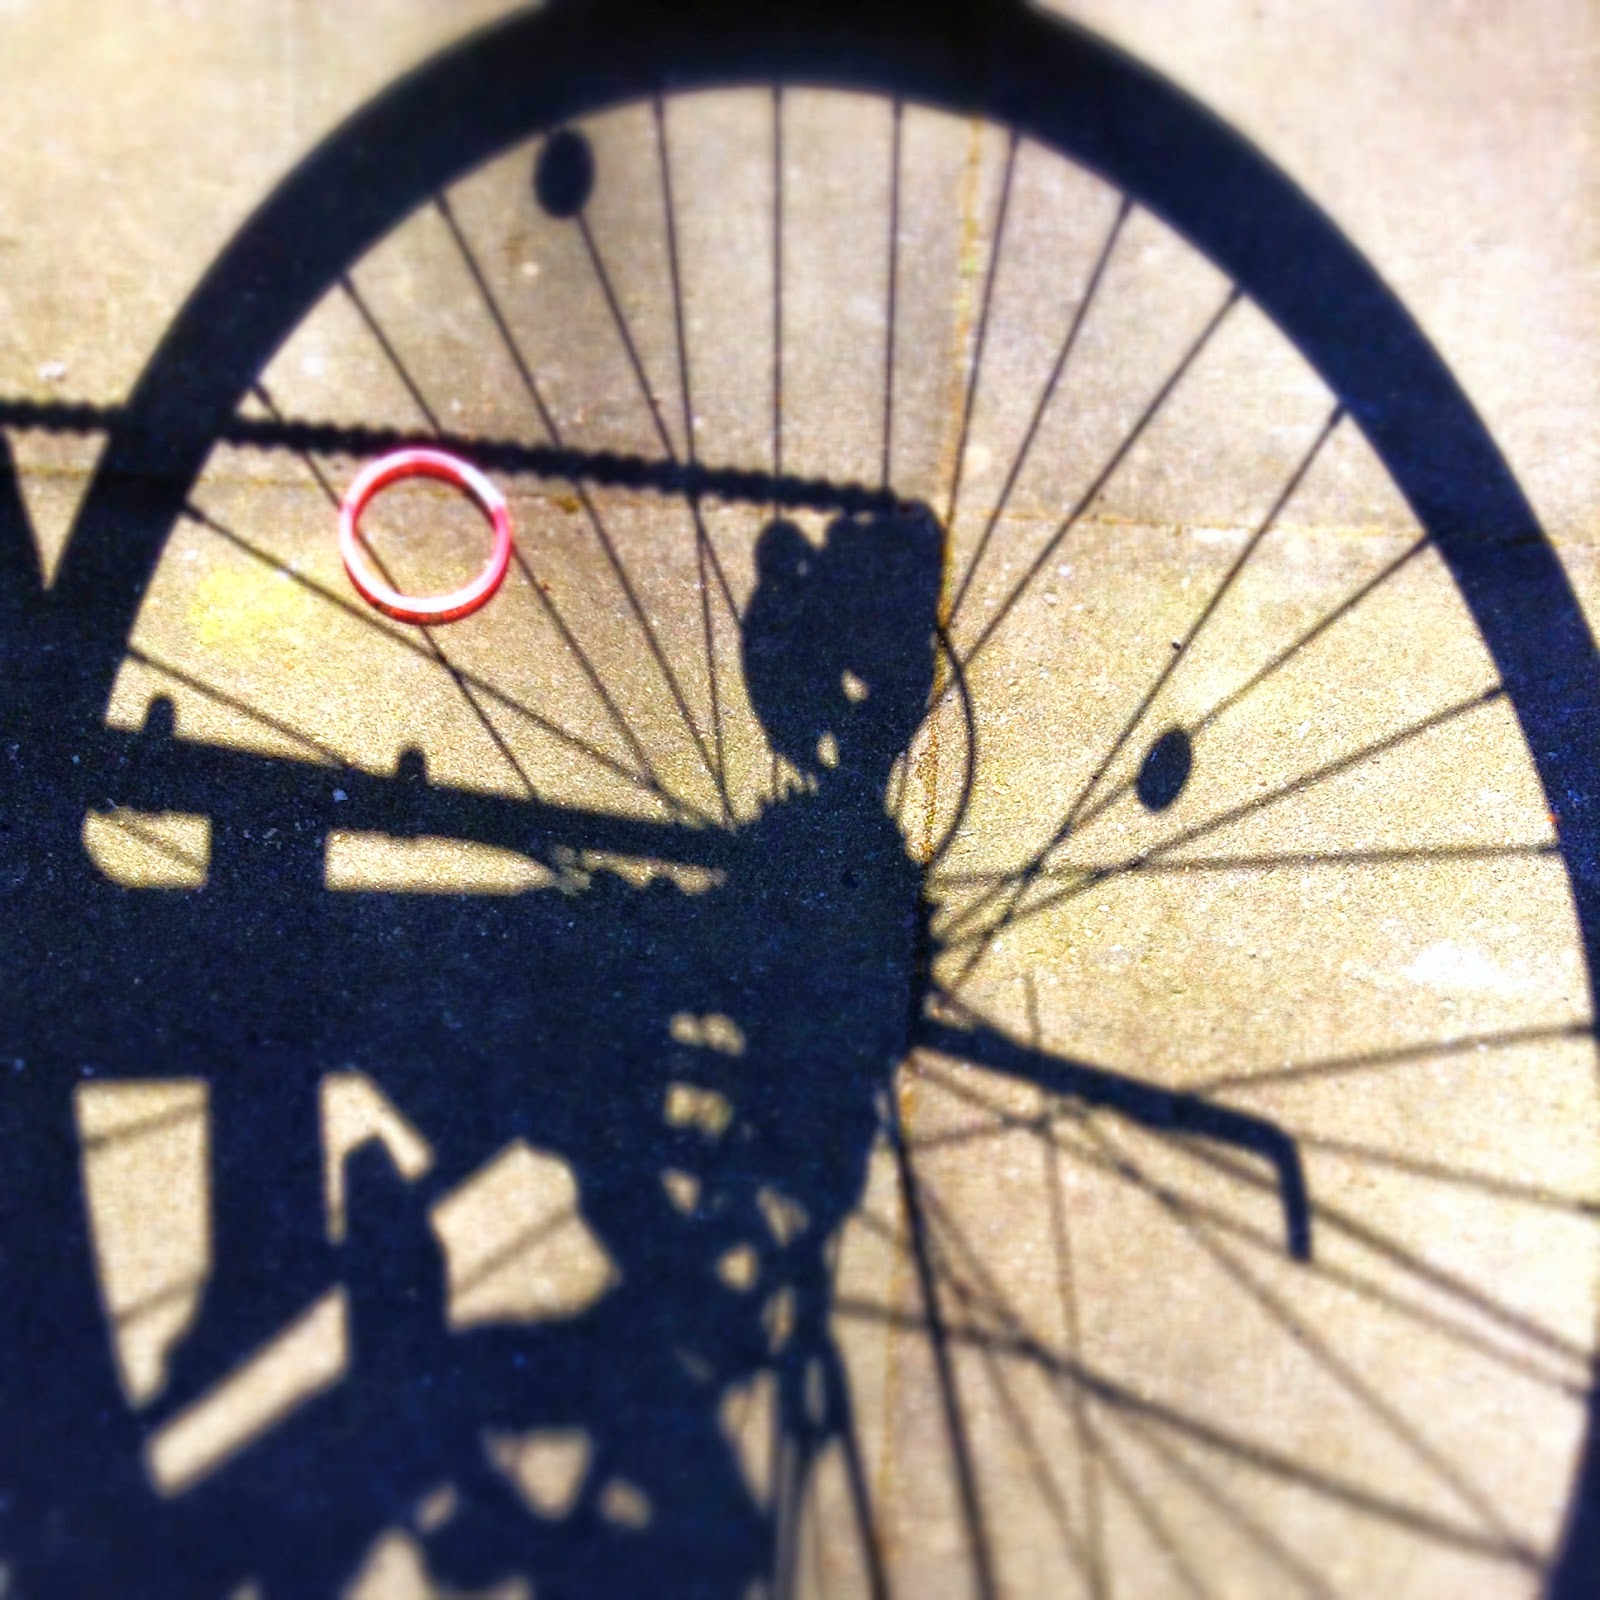 pink elastic in shadow of bike wheel